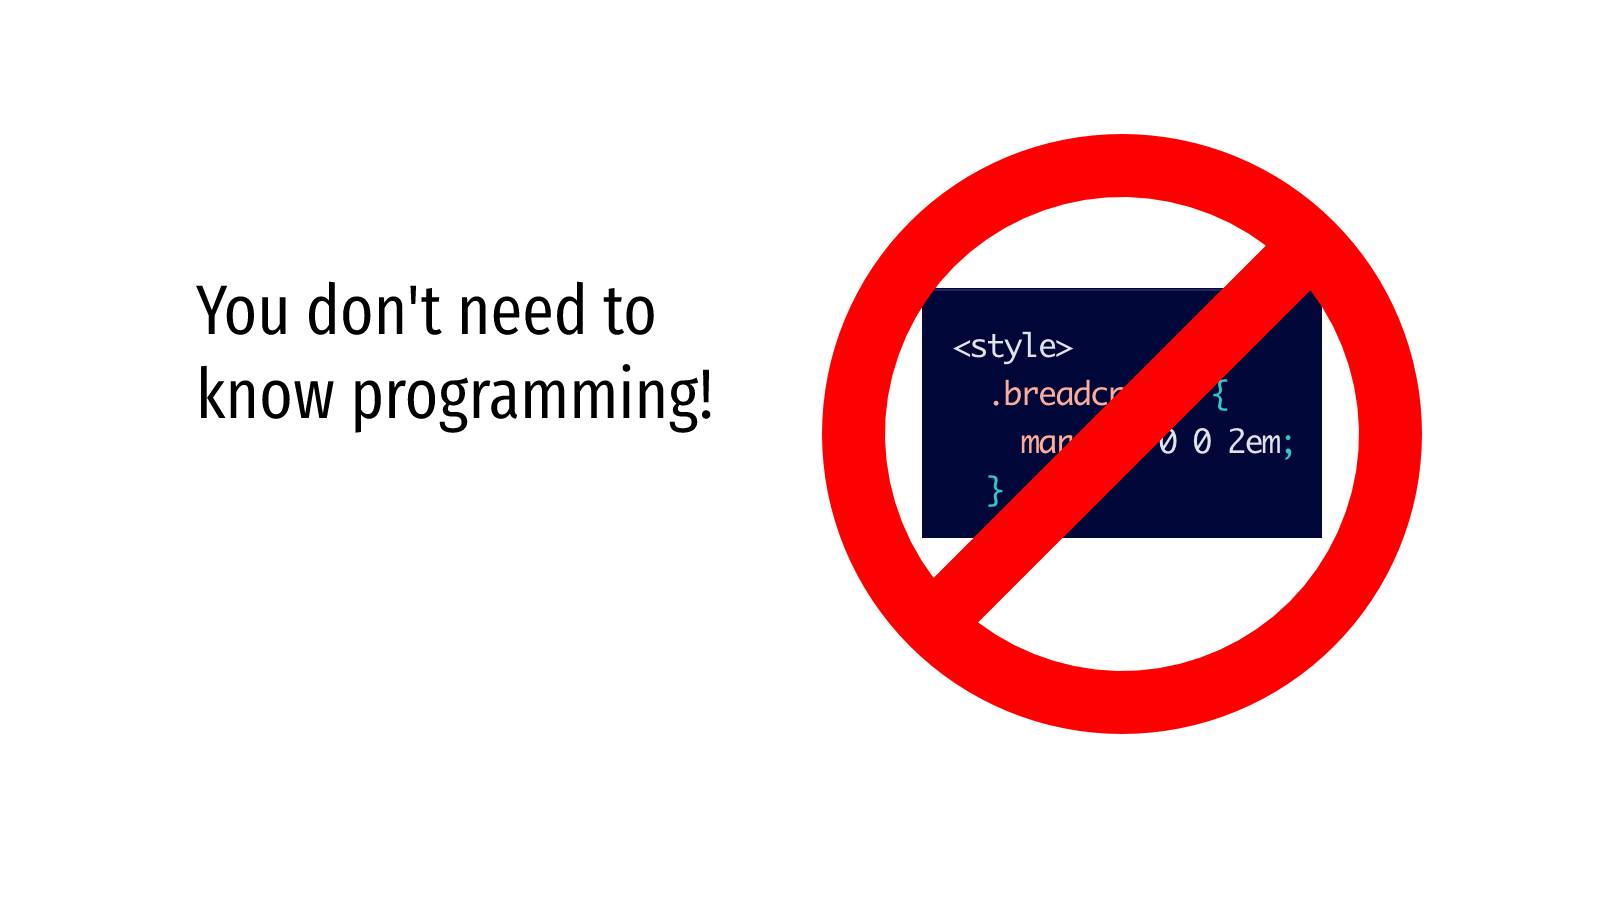 Du behøver ikke at kende til programmering!